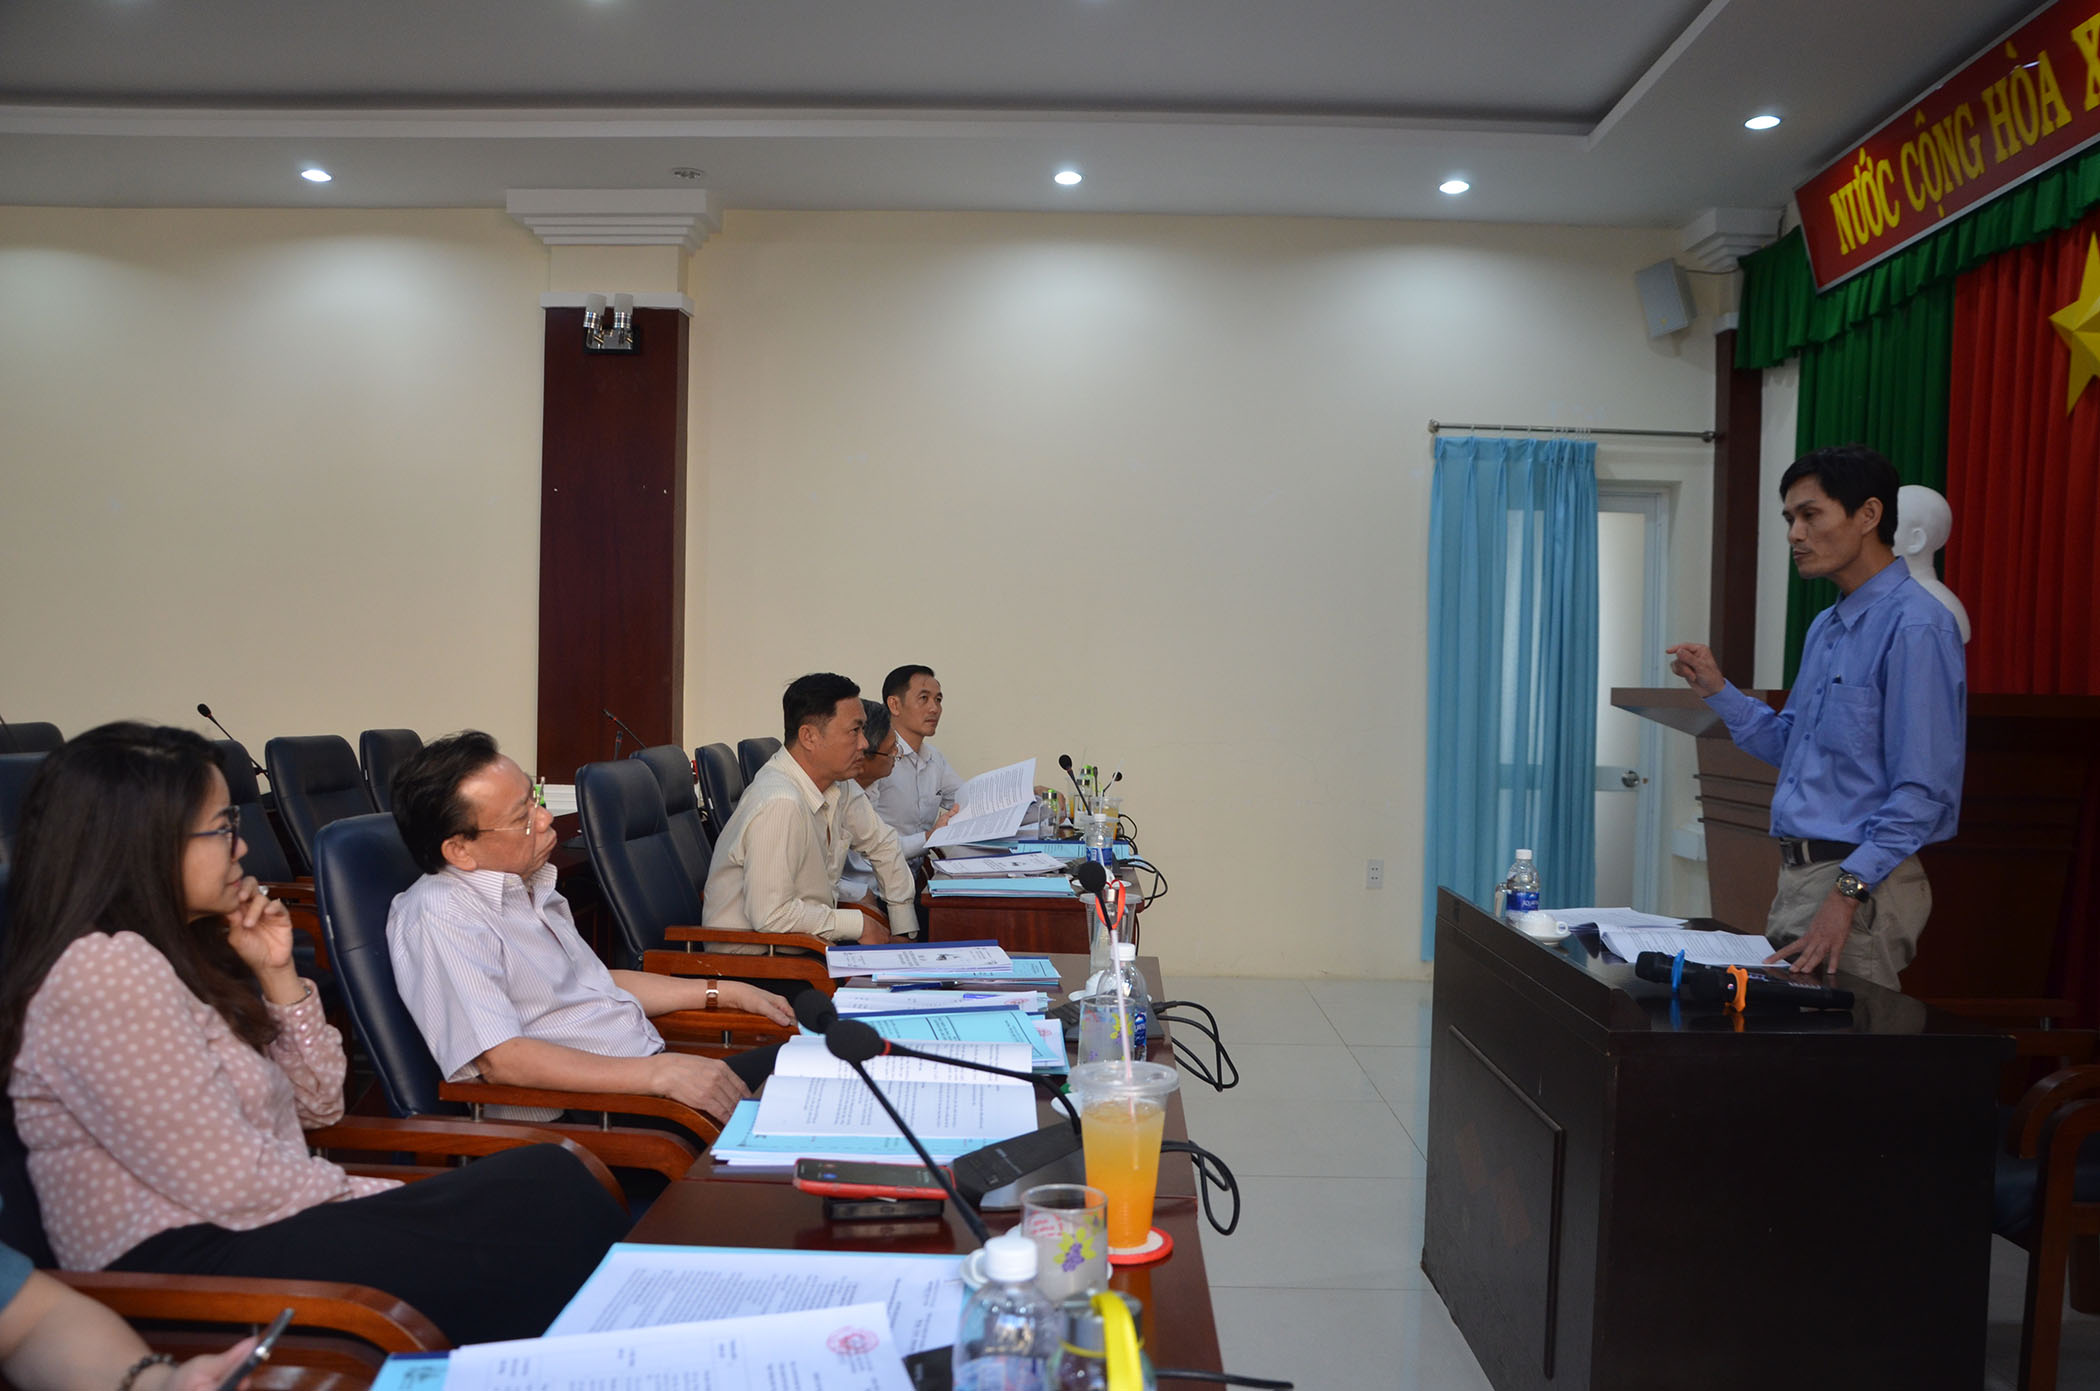 Ứng viên thi chức danh lãnh đạo quản lý tại huyện Xuyên Mộc thi nội dung thuyết trình đề án.